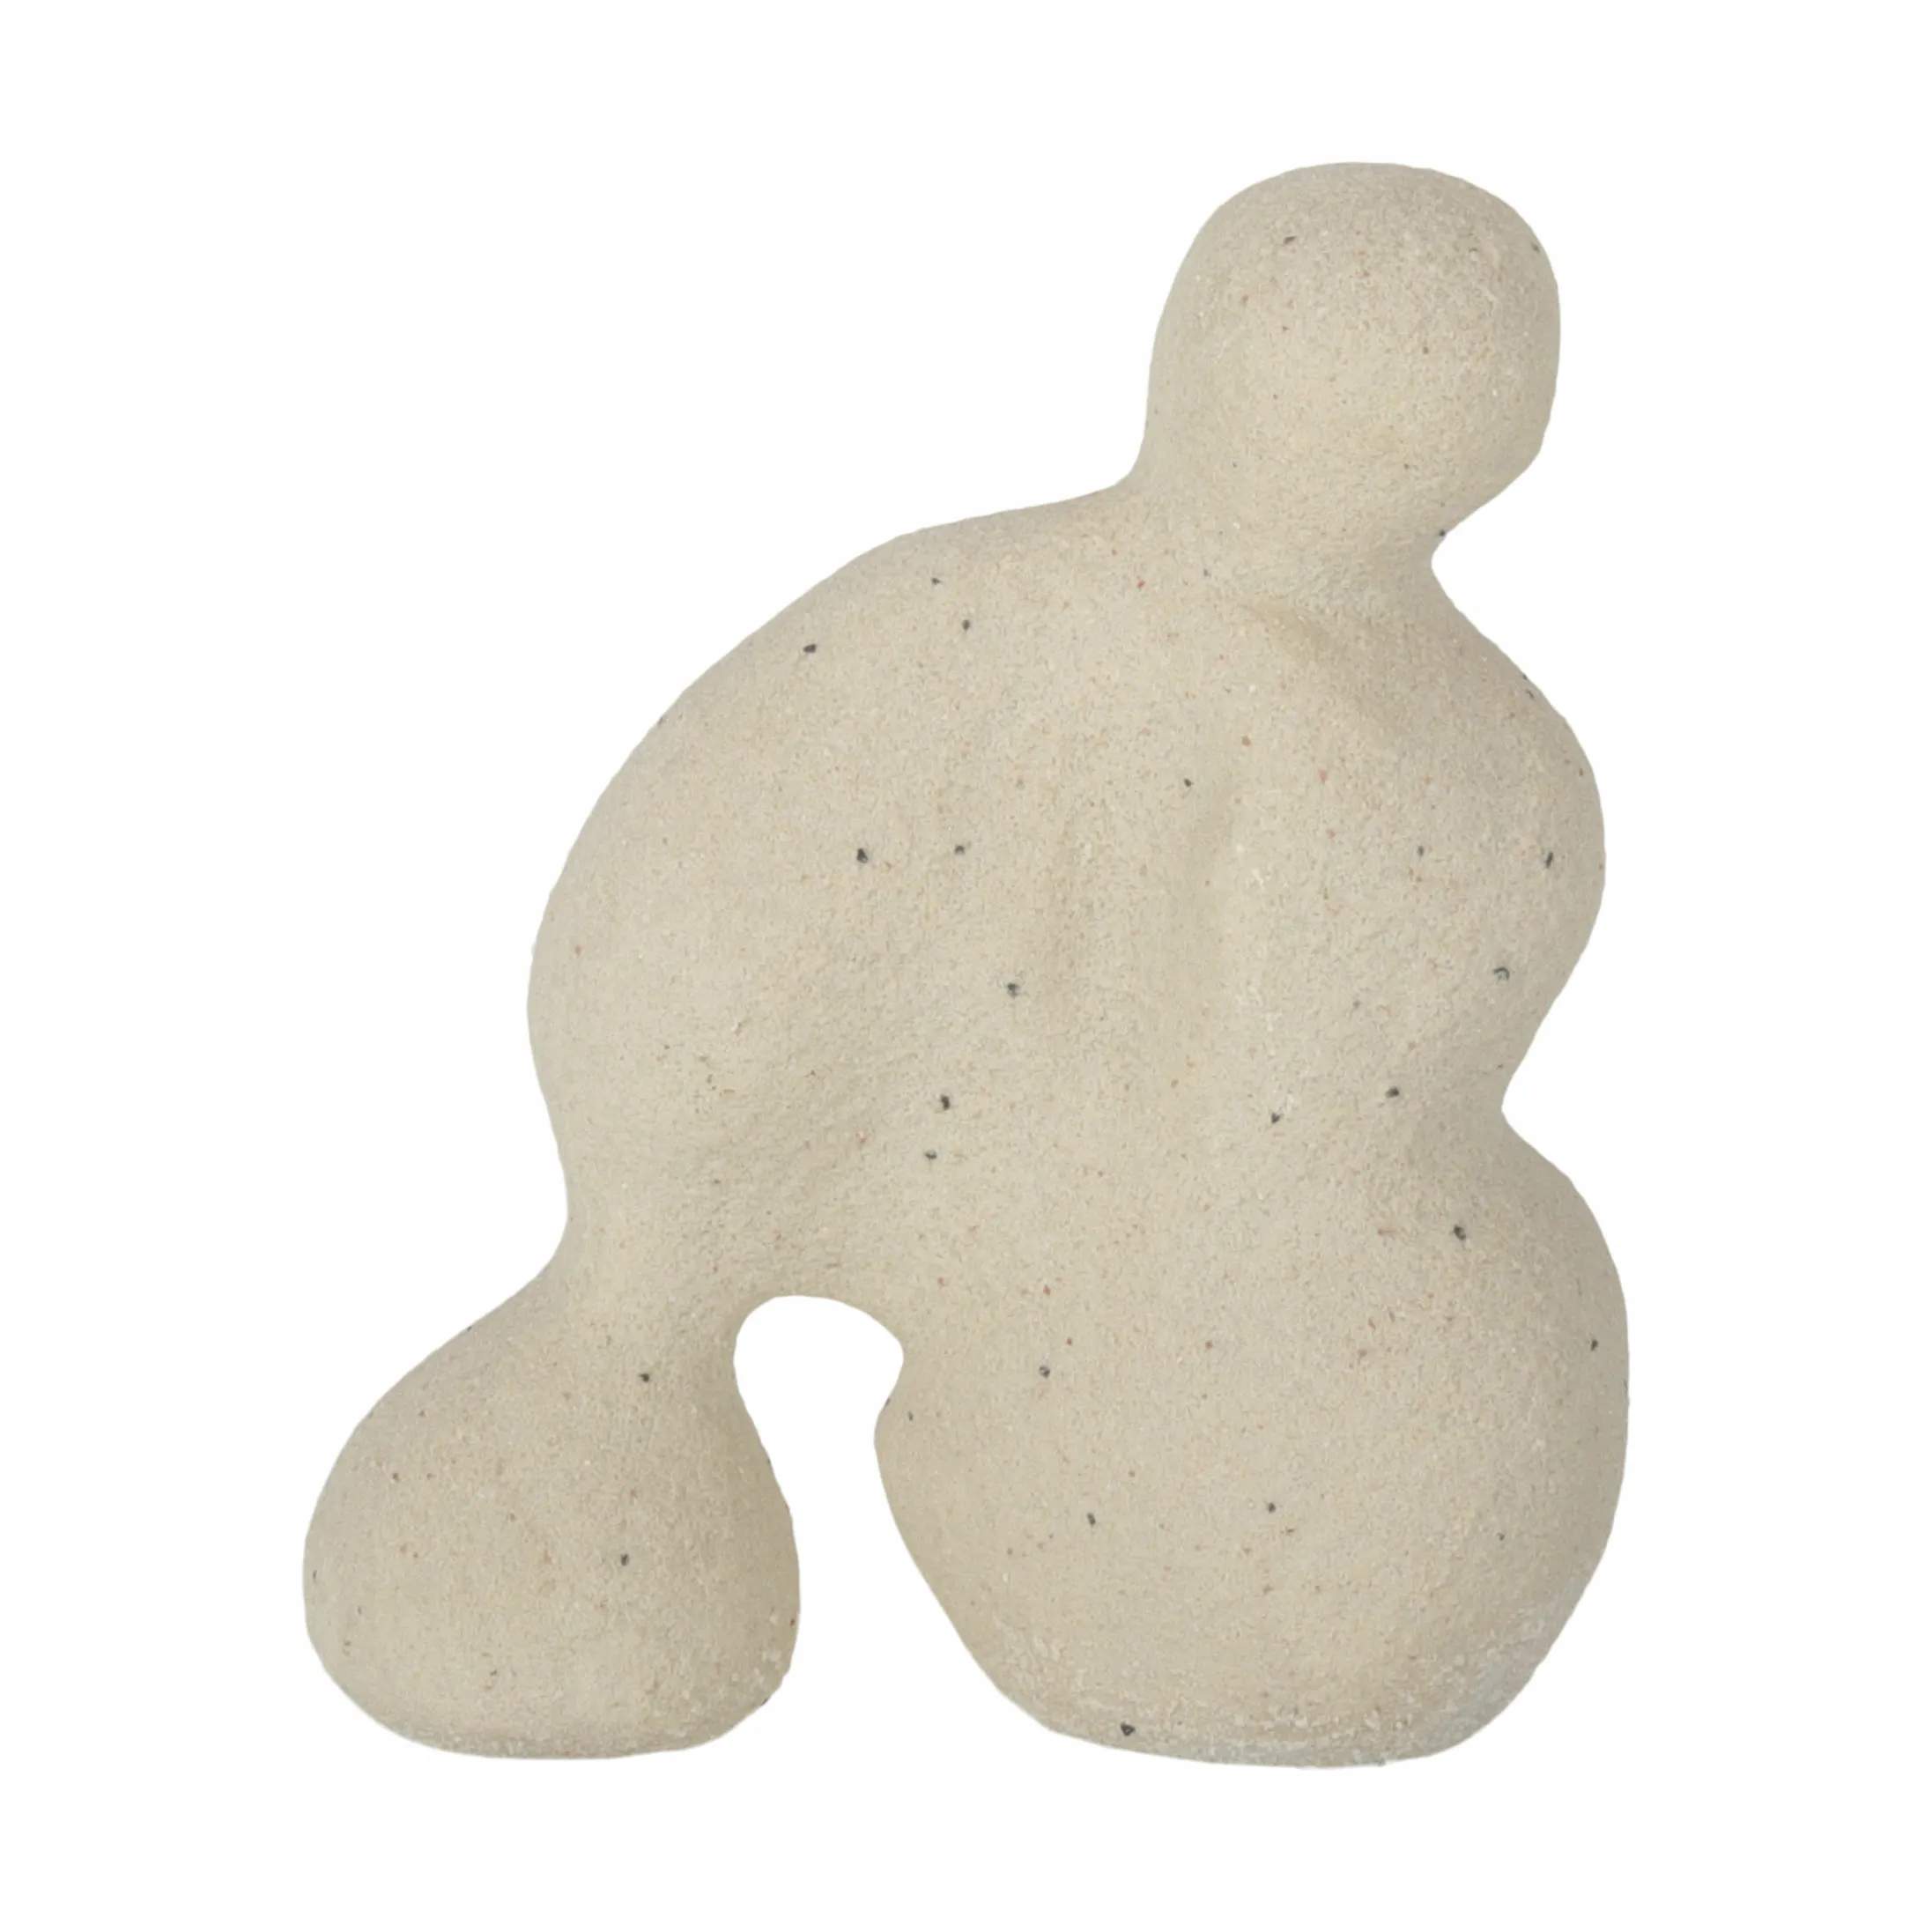 Otis figur, lys sand, large